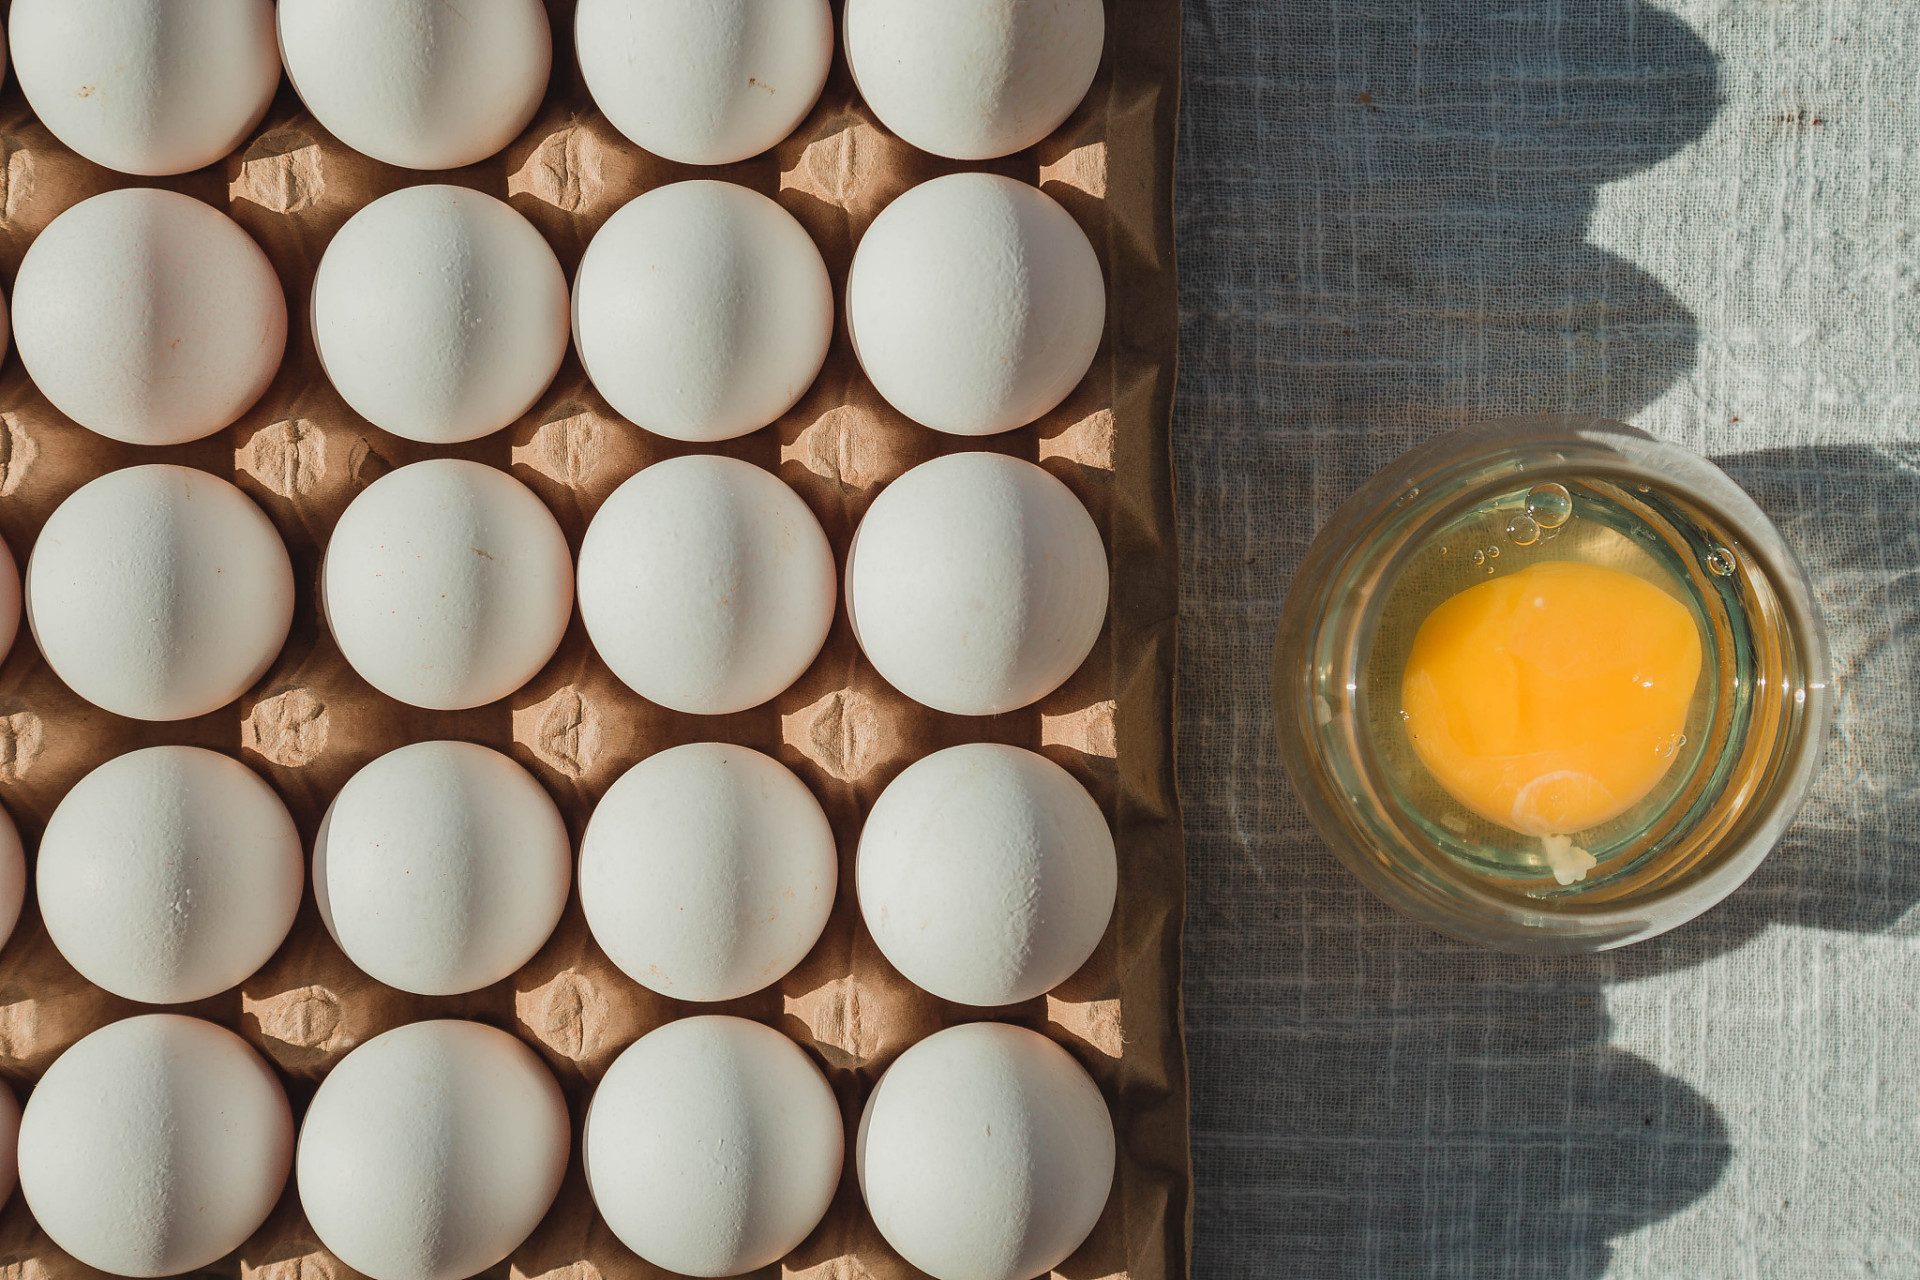 人造鸡蛋确实存在,但由于成本过高,以及营养方面也不如真鸡蛋,所以